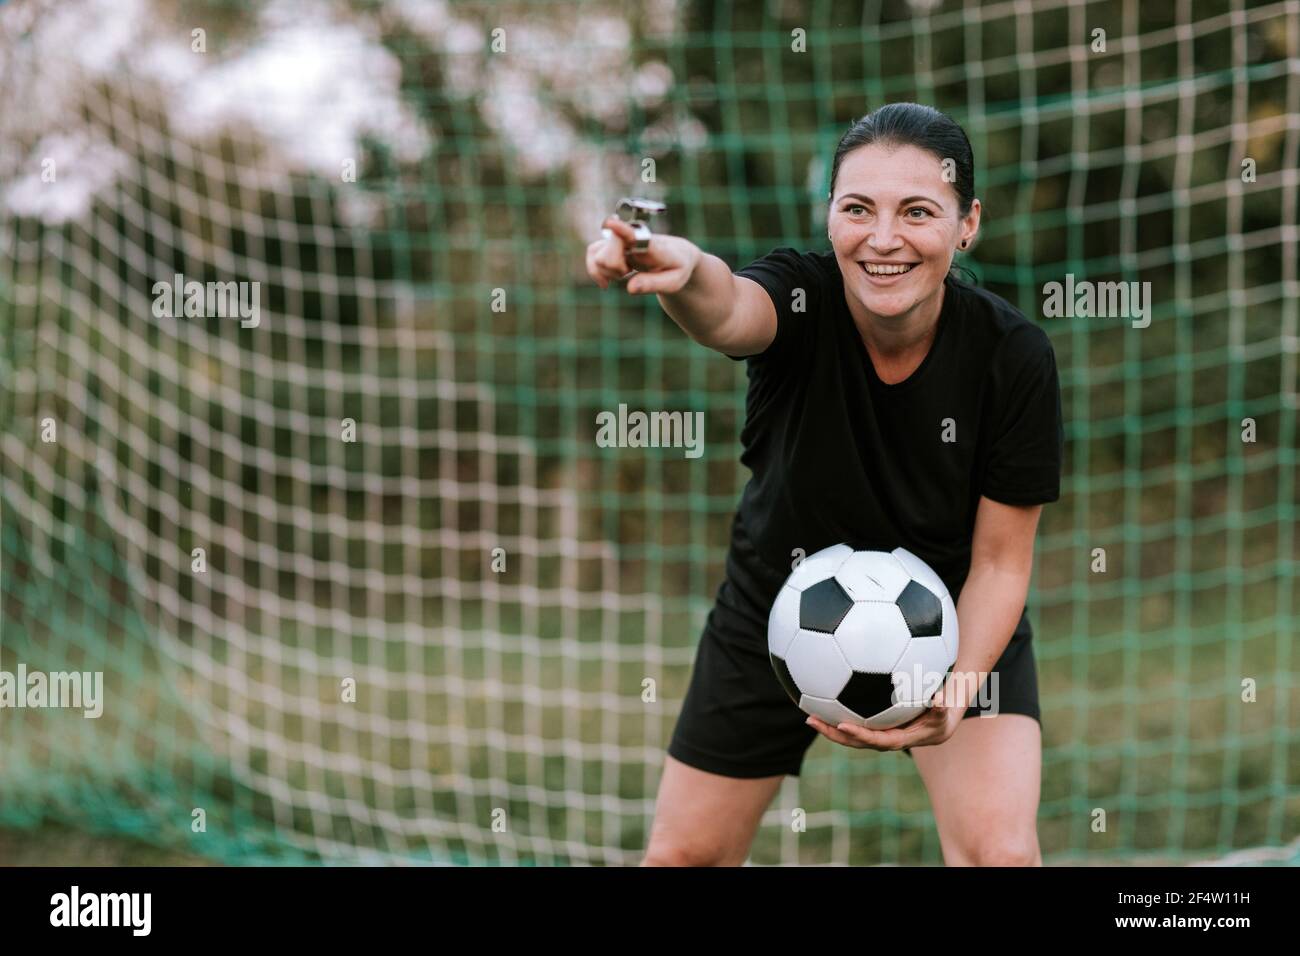 Une femme joyeuse arbitre de football se tenant au but sur le terrain de football. Femme amateur arbitre en robe de football noir tenant le ballon devant le filet de football. Banque D'Images